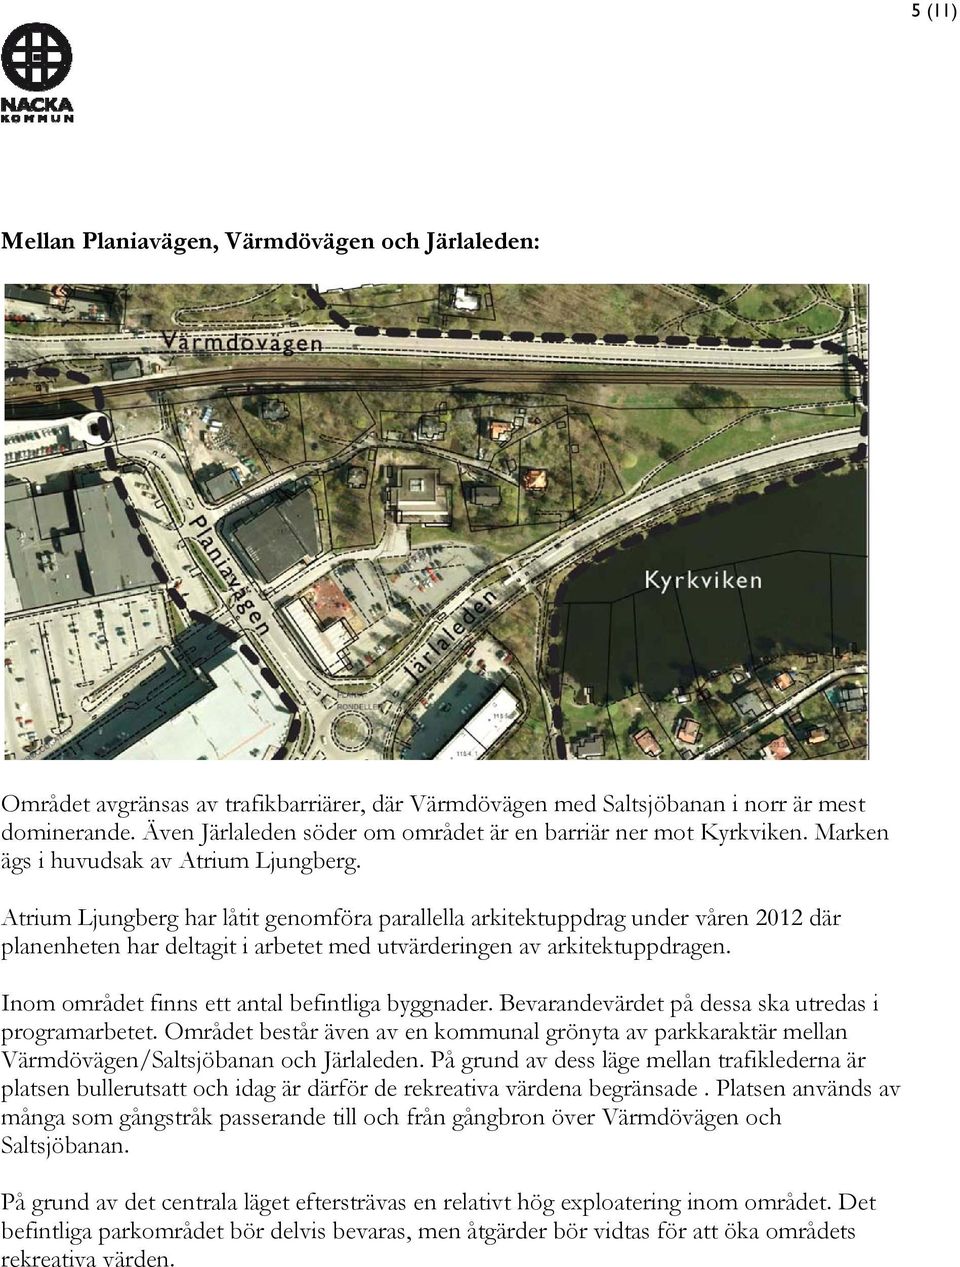 Atrium Ljungberg har låtit genomföra parallella arkitektuppdrag under våren 2012 där planenheten har deltagit i arbetet med utvärderingen av arkitektuppdragen.